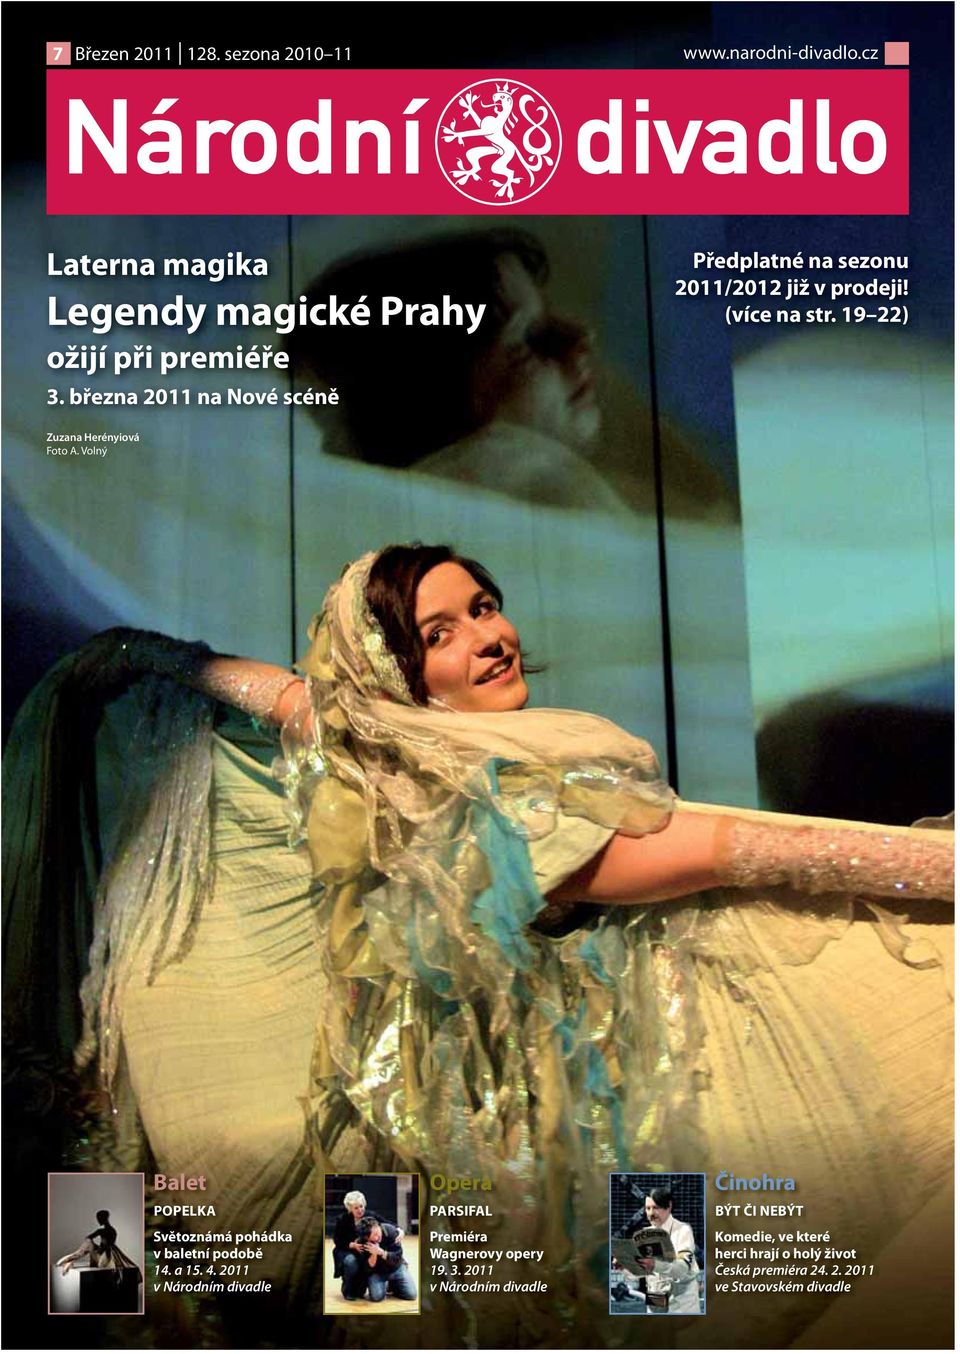 Volný Balet POPELKA Světoznámá pohádka v baletní podobě 14. a 15. 4.